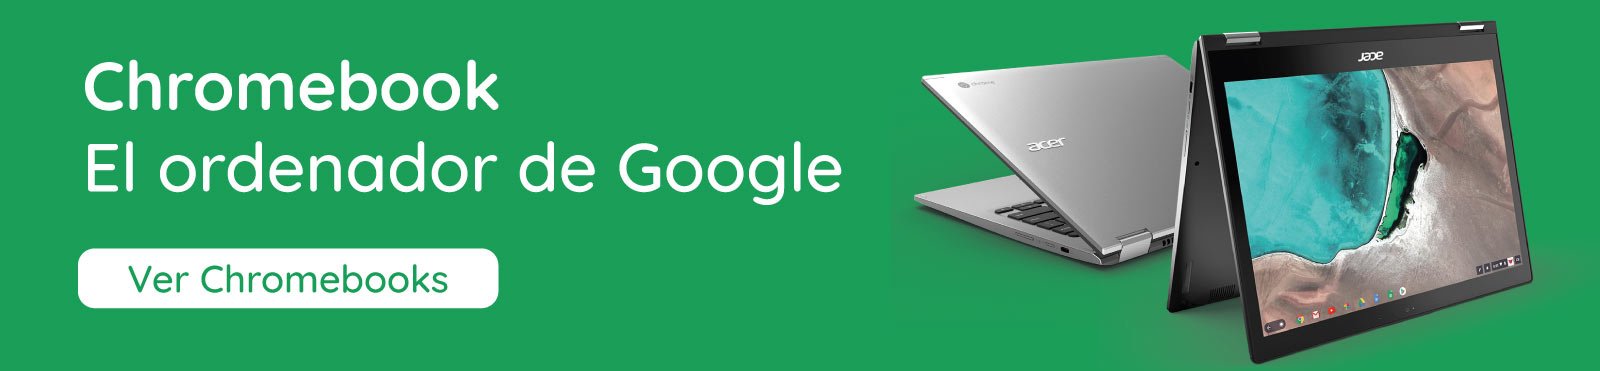 Botón para obtener más información sobre los ordenadores de Google